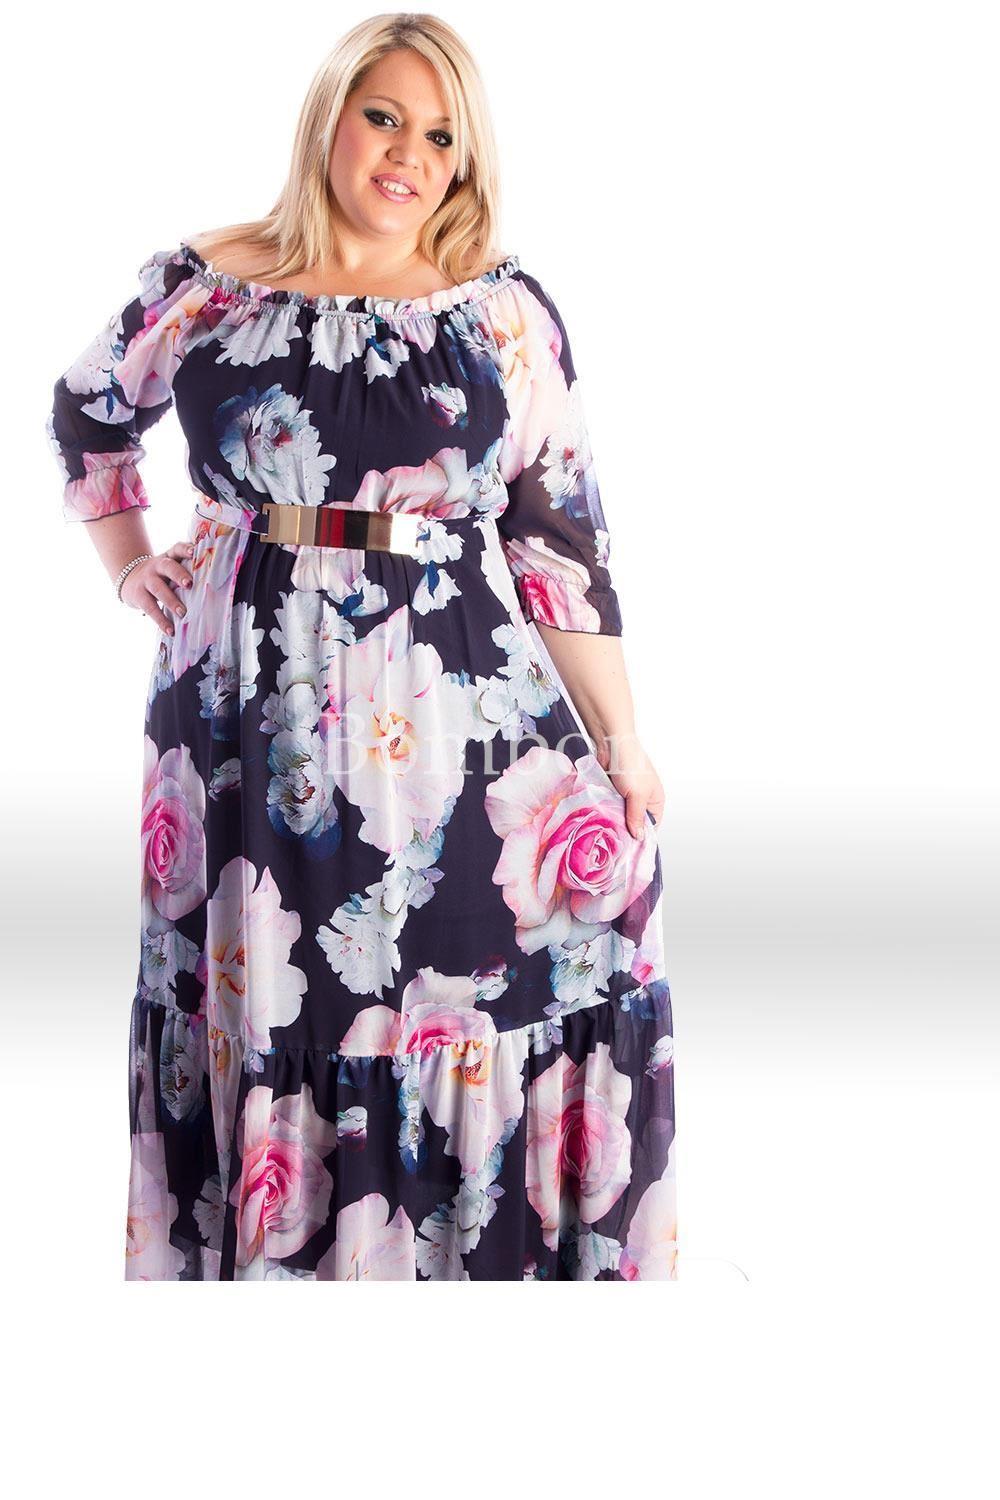 Vestido largo con mangas floral color marino y rosa , rf 5009 talla grande desde 46 hasta la 64 - Imagen 1